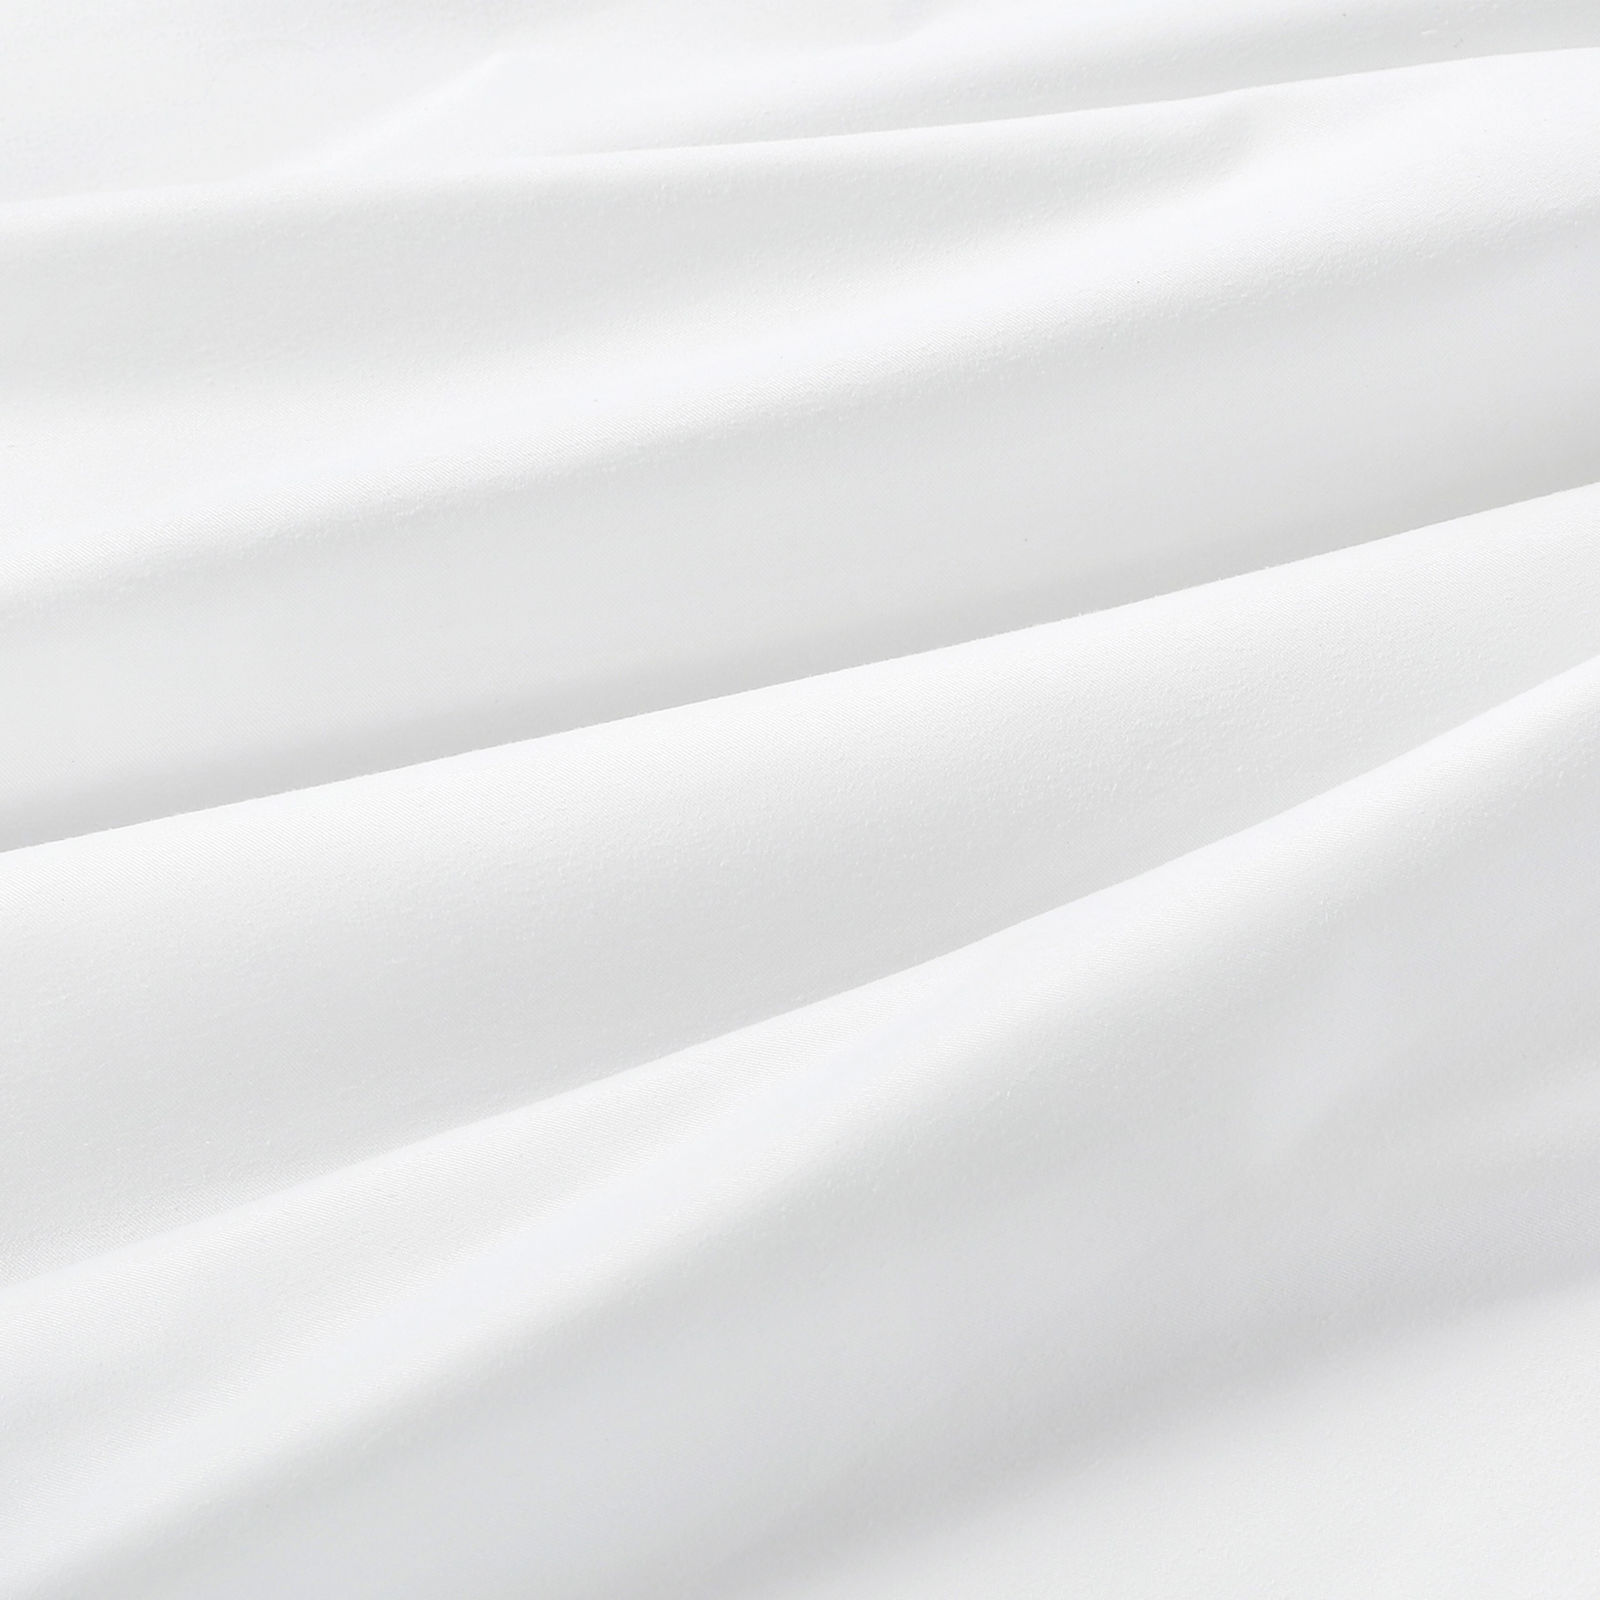 Țesătură teflonată de lux - albă cu luciu satinat